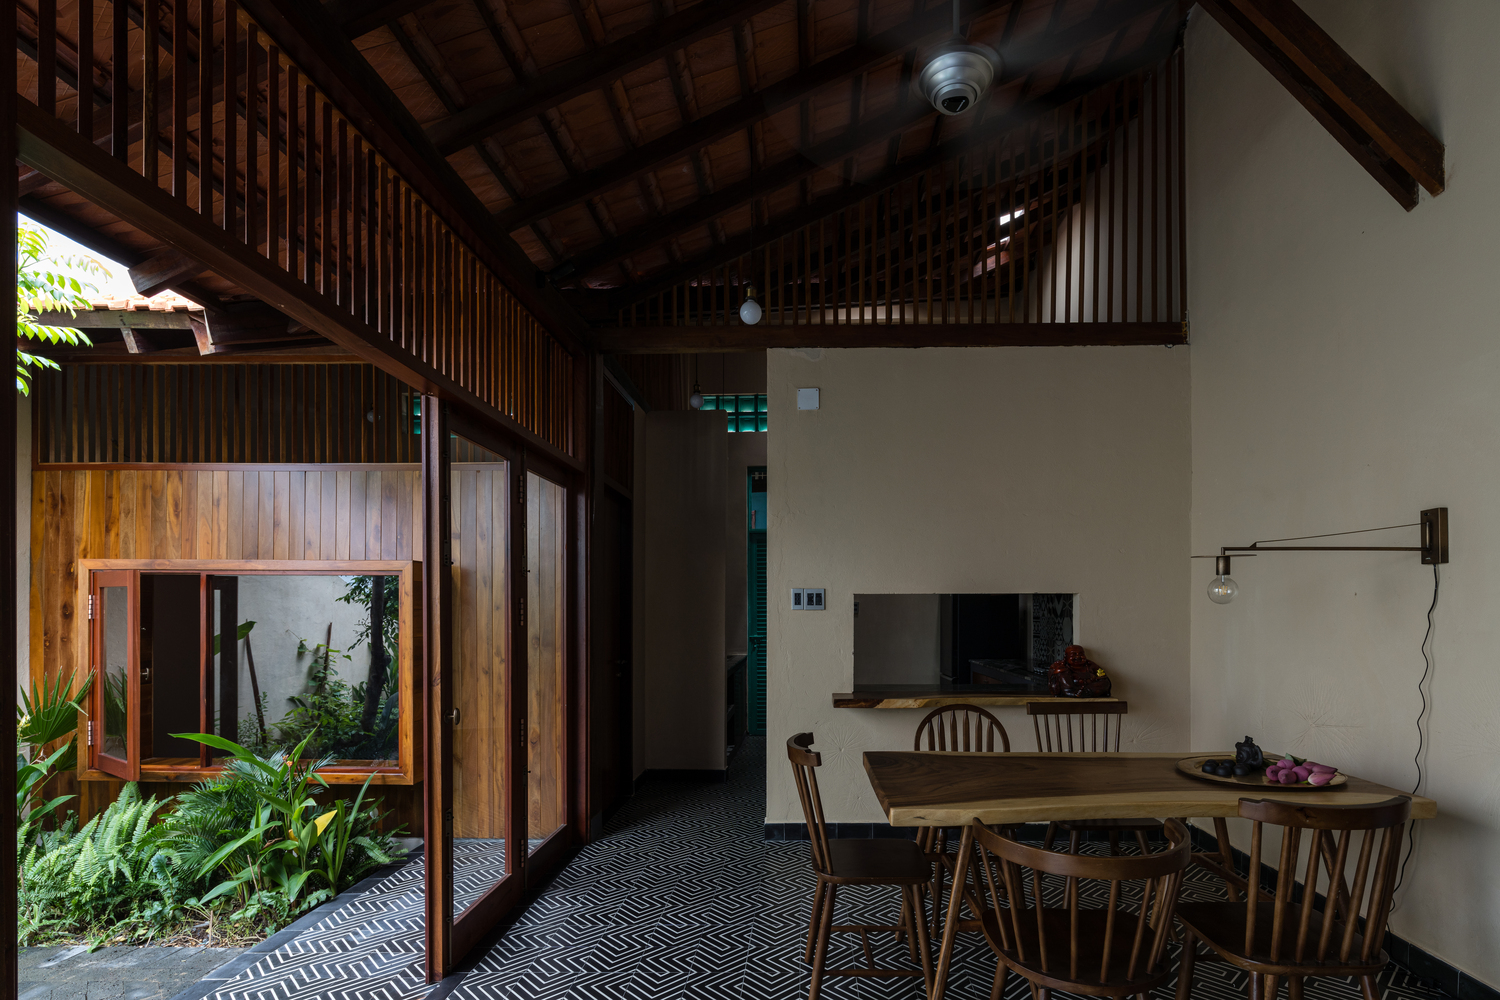 Hồng Ngự House: Chuyện về 'ngôi nhà mới trên mảnh đất cũ' tại Đồng bằng sông Cửu Long - Ảnh 9